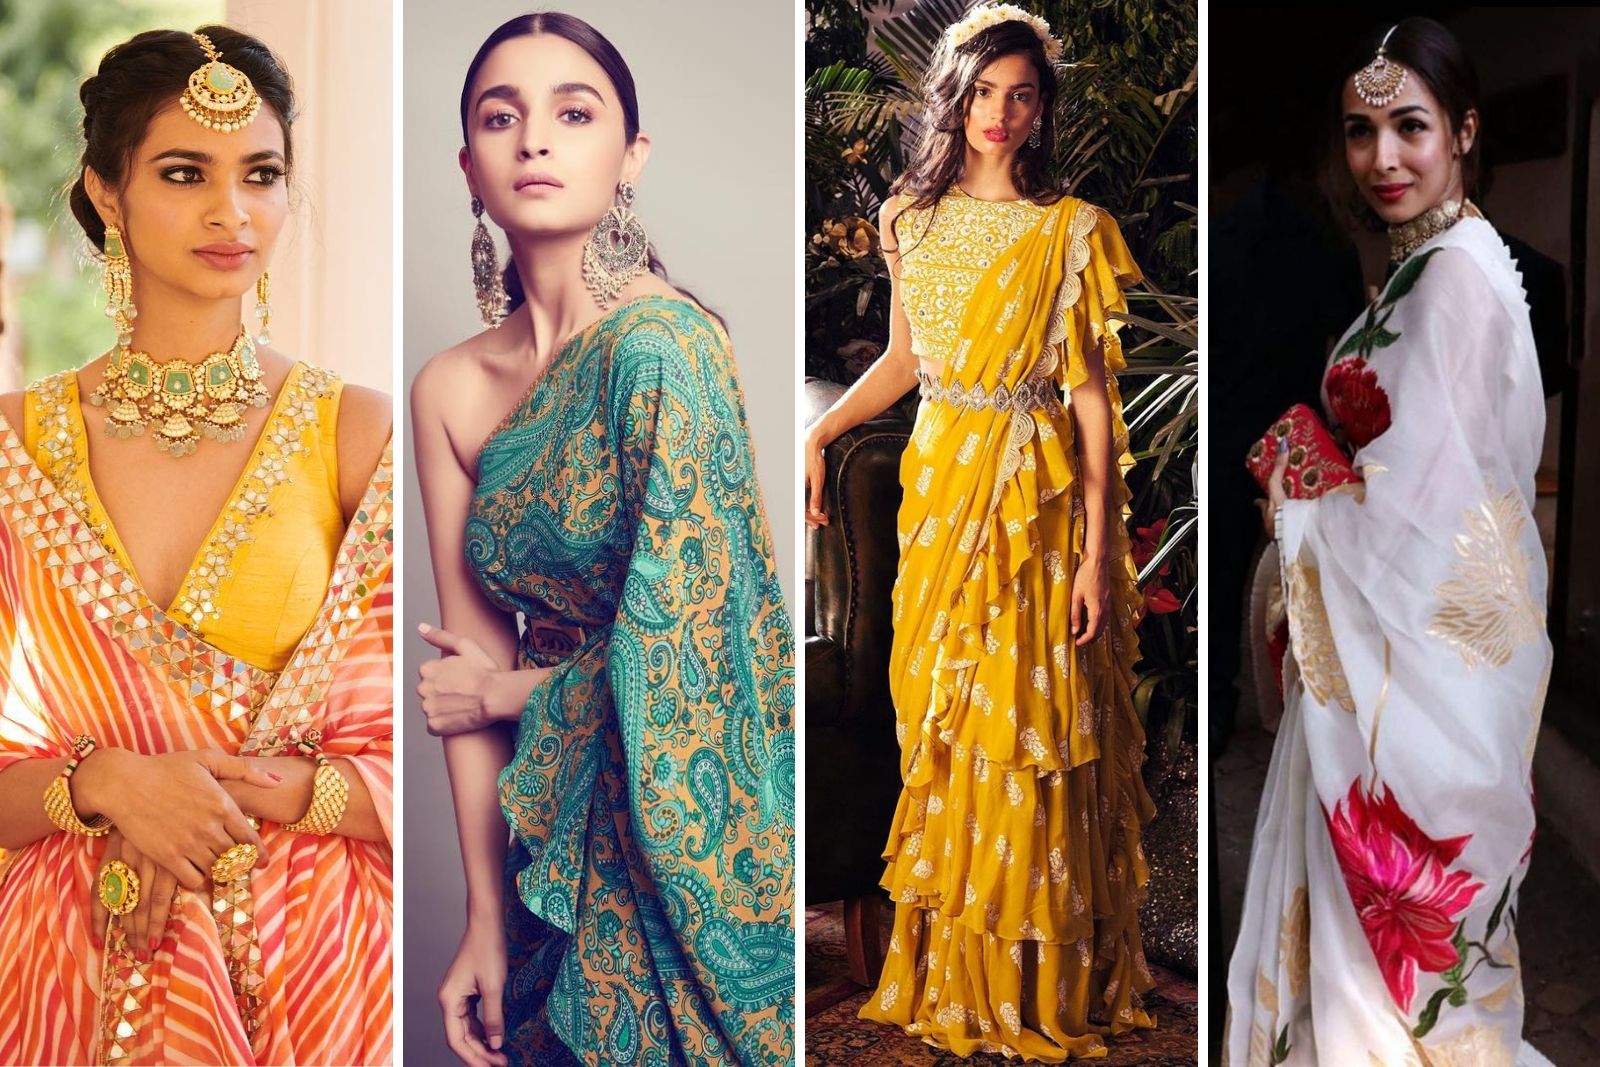 occasion wear, summer occasion wear, bollywood fashion 2019, bollywood fashion trends, fabriclore